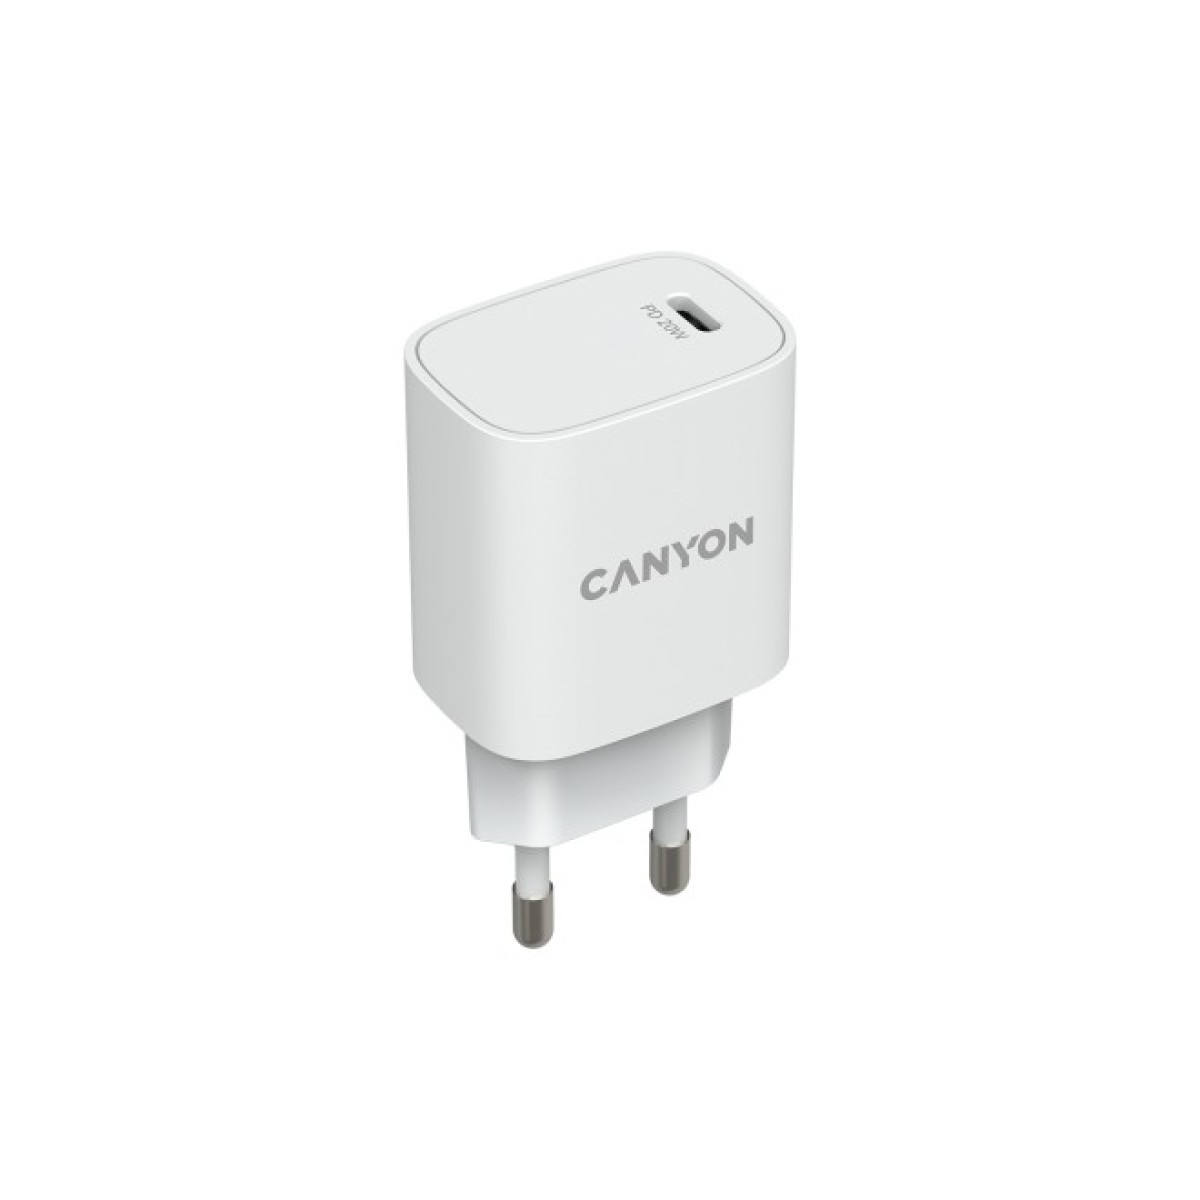 Зарядное устройство Canyon PD 20W (CNE-CHA20W02) 256_256.jpg